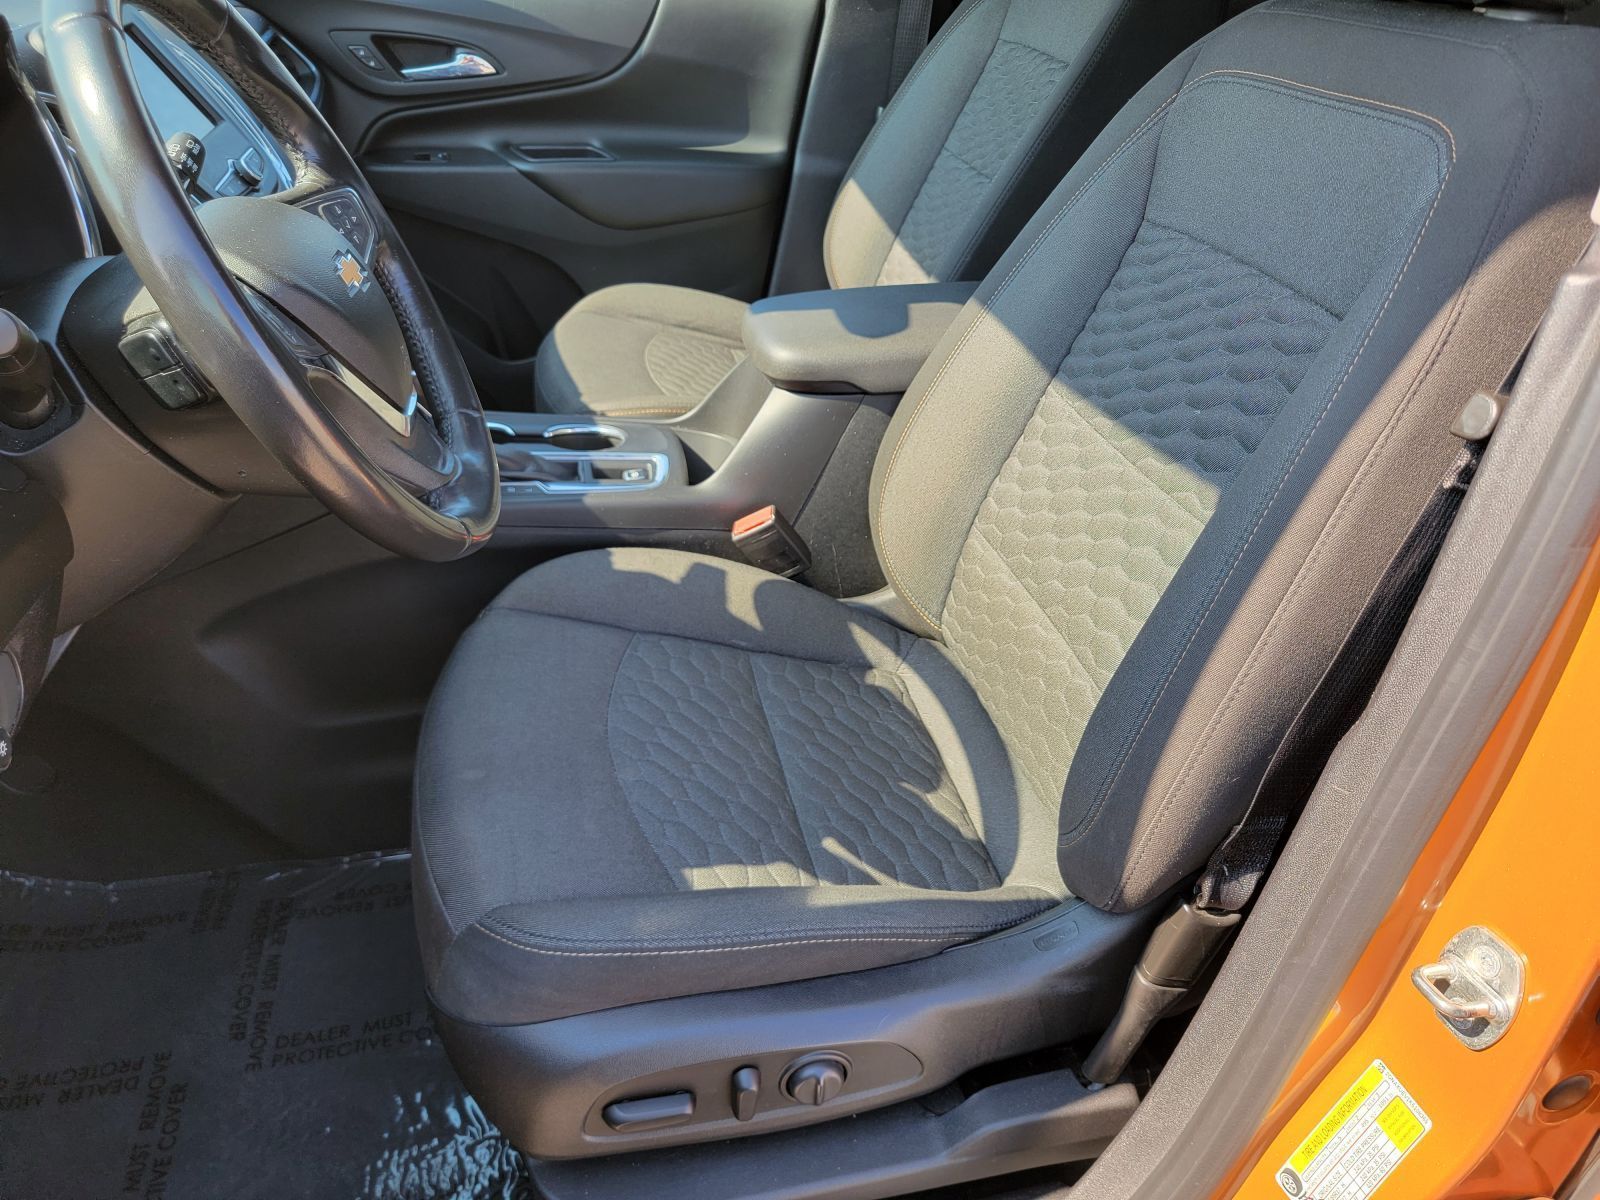 Used, 2019 Chevrolet Equinox LT, Orange, P0521-17